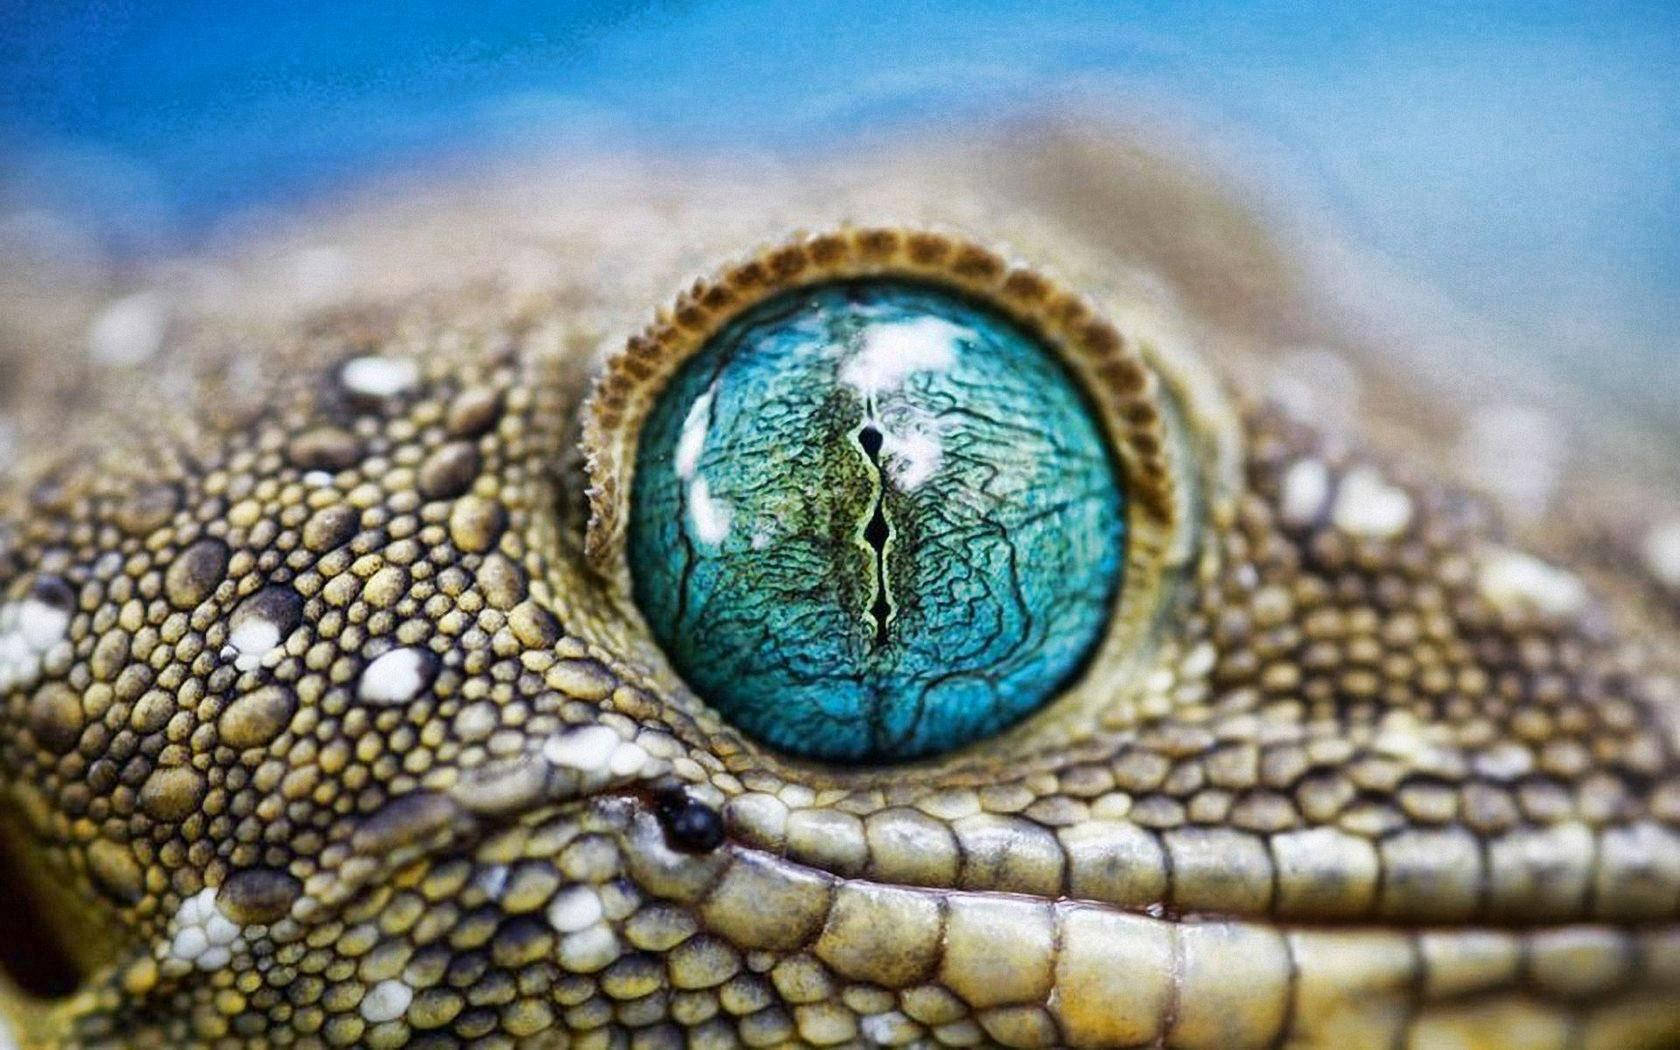 Leopard Gecko Blue Eyes Wallpaper